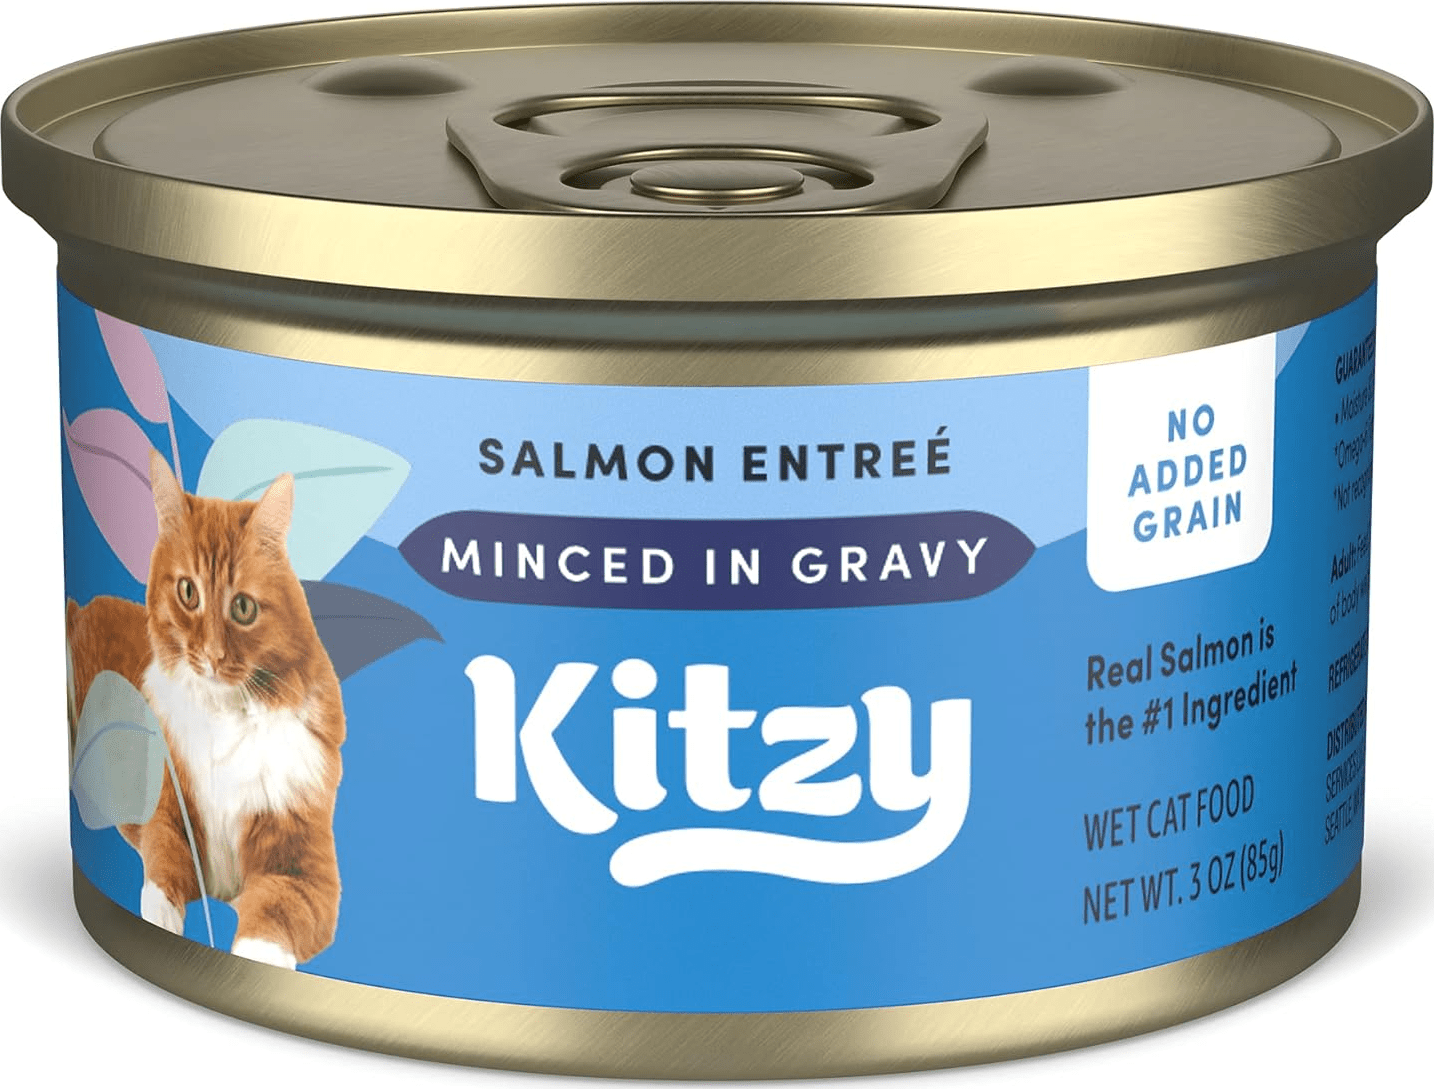 Kitzy Salmon Entree